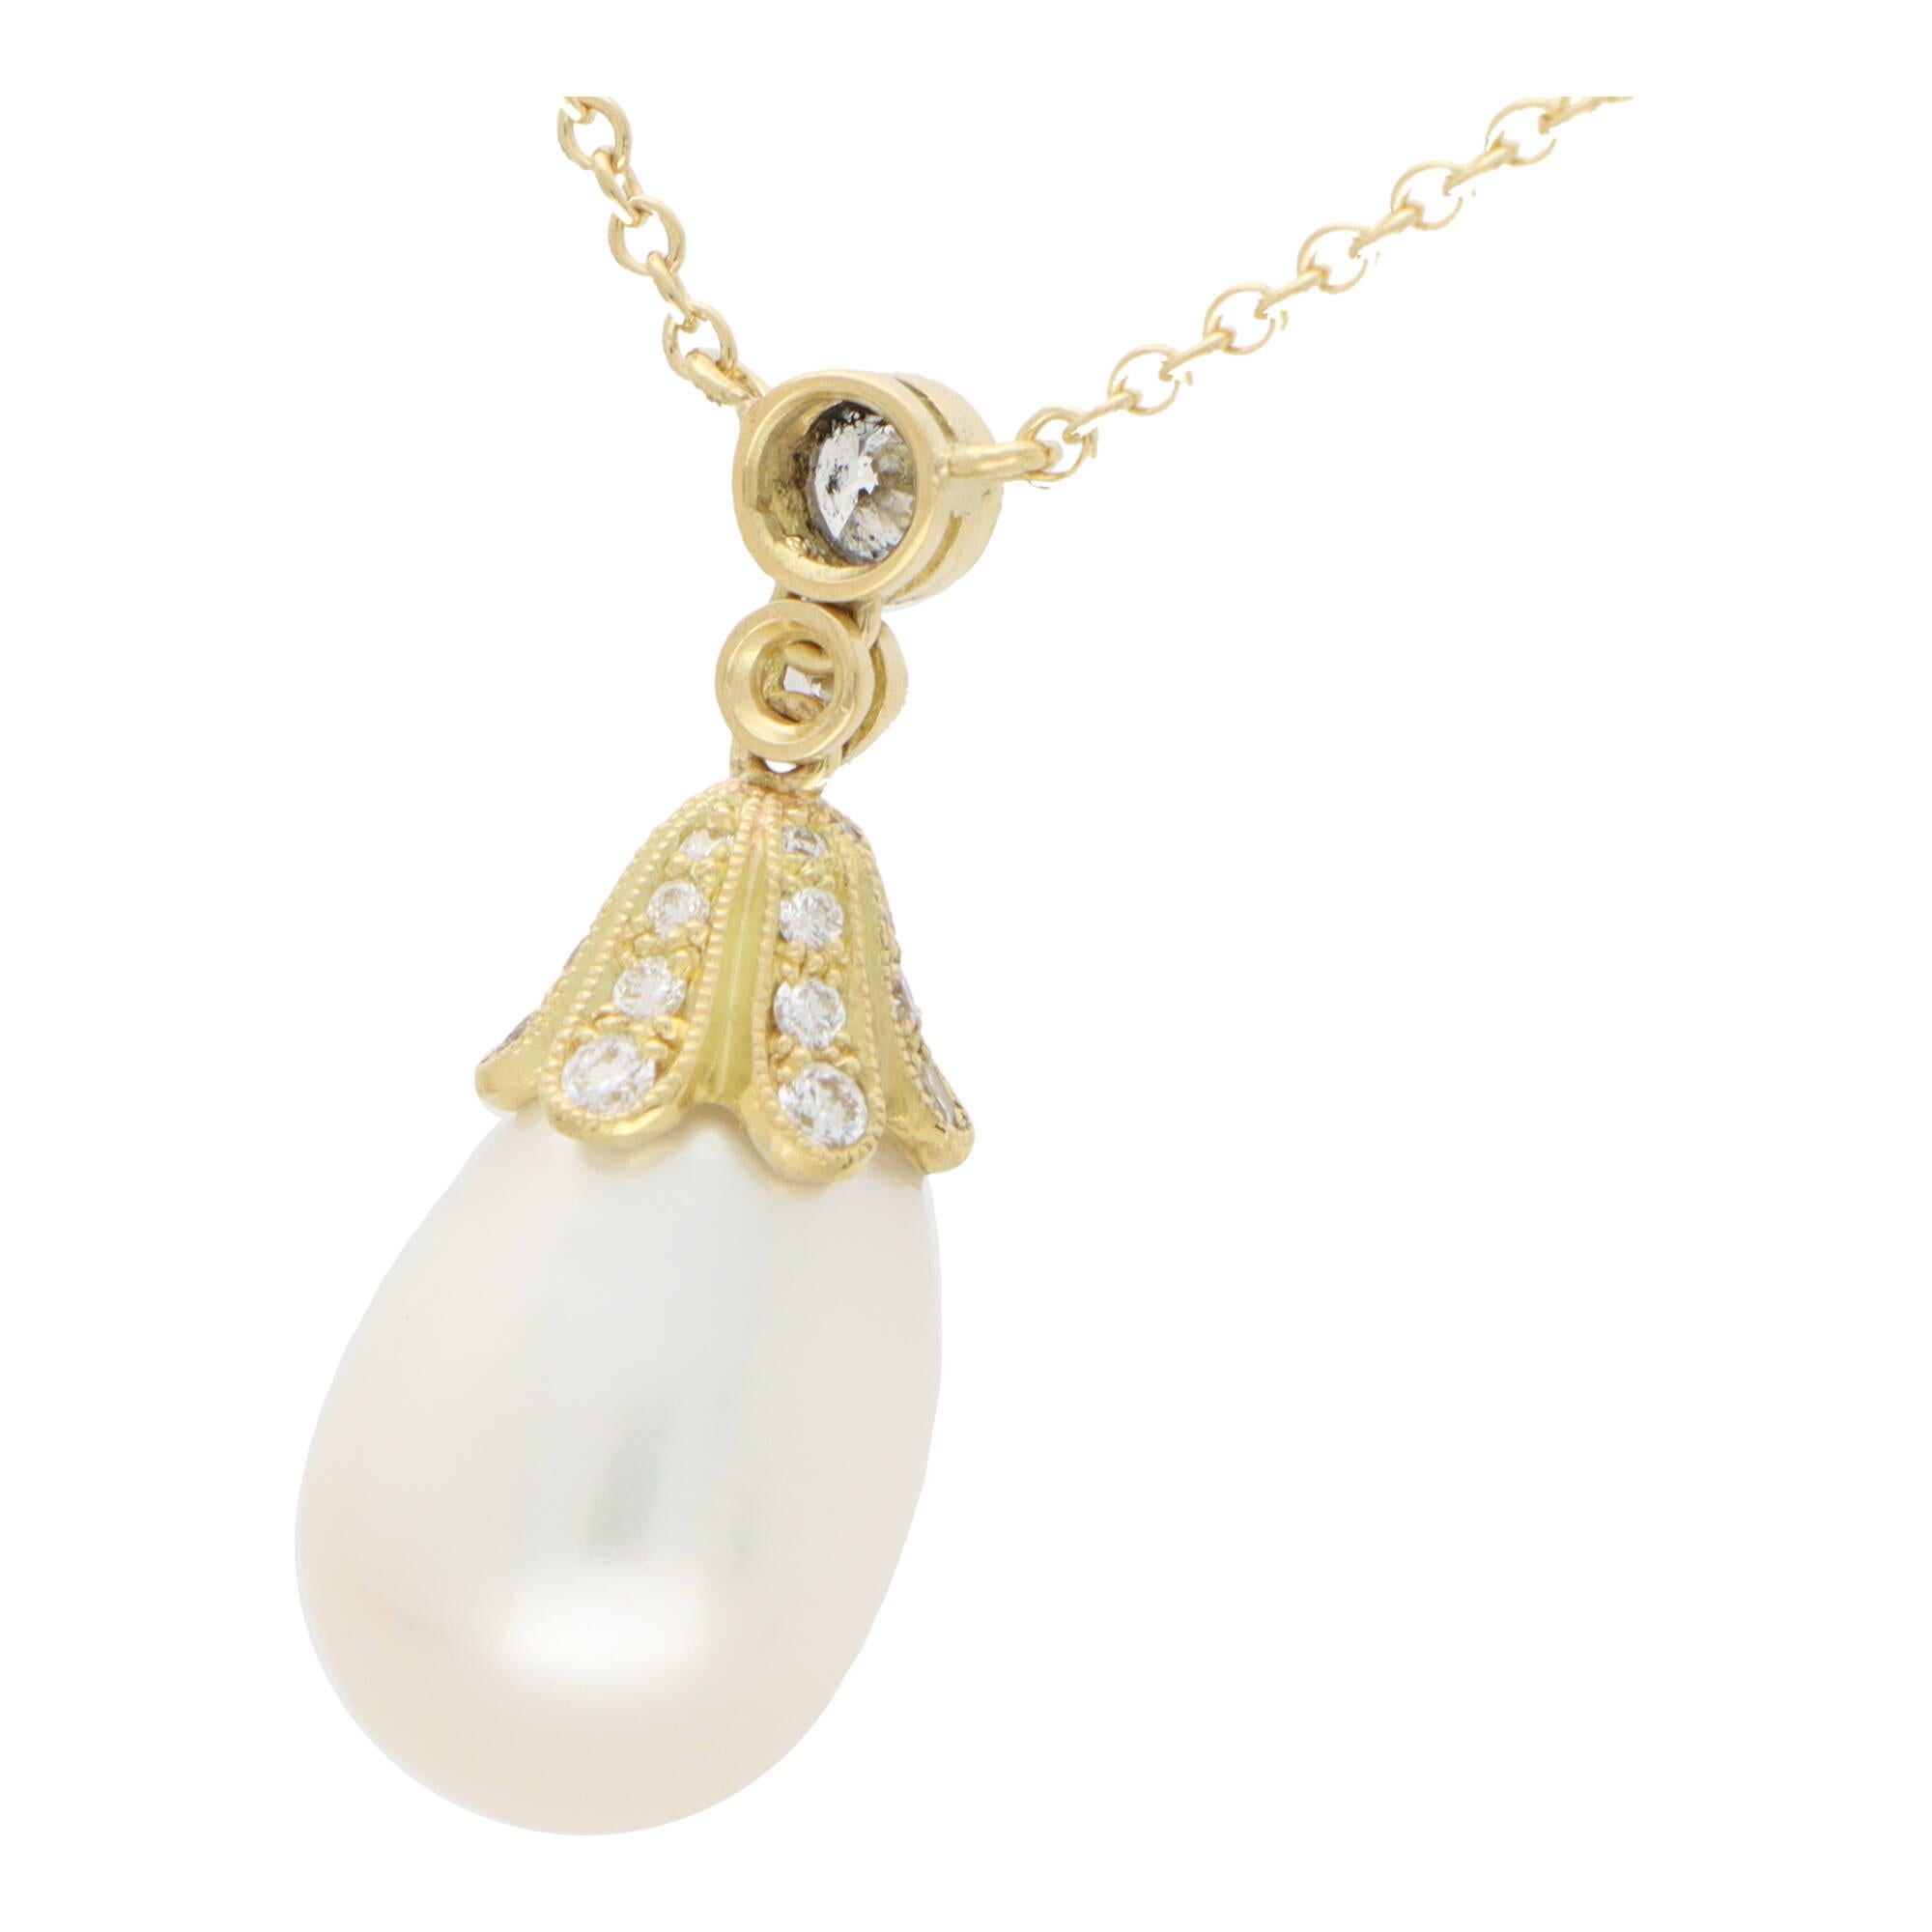 Un fabuleux collier de perles et de diamants en or jaune 18 carats.

Le pendentif est orné d'une perle de 10 x 12 millimètres en forme de goutte d'eau, élégamment suspendue à un capuchon serti de diamants et à une anse en diamants. Le pendentif est